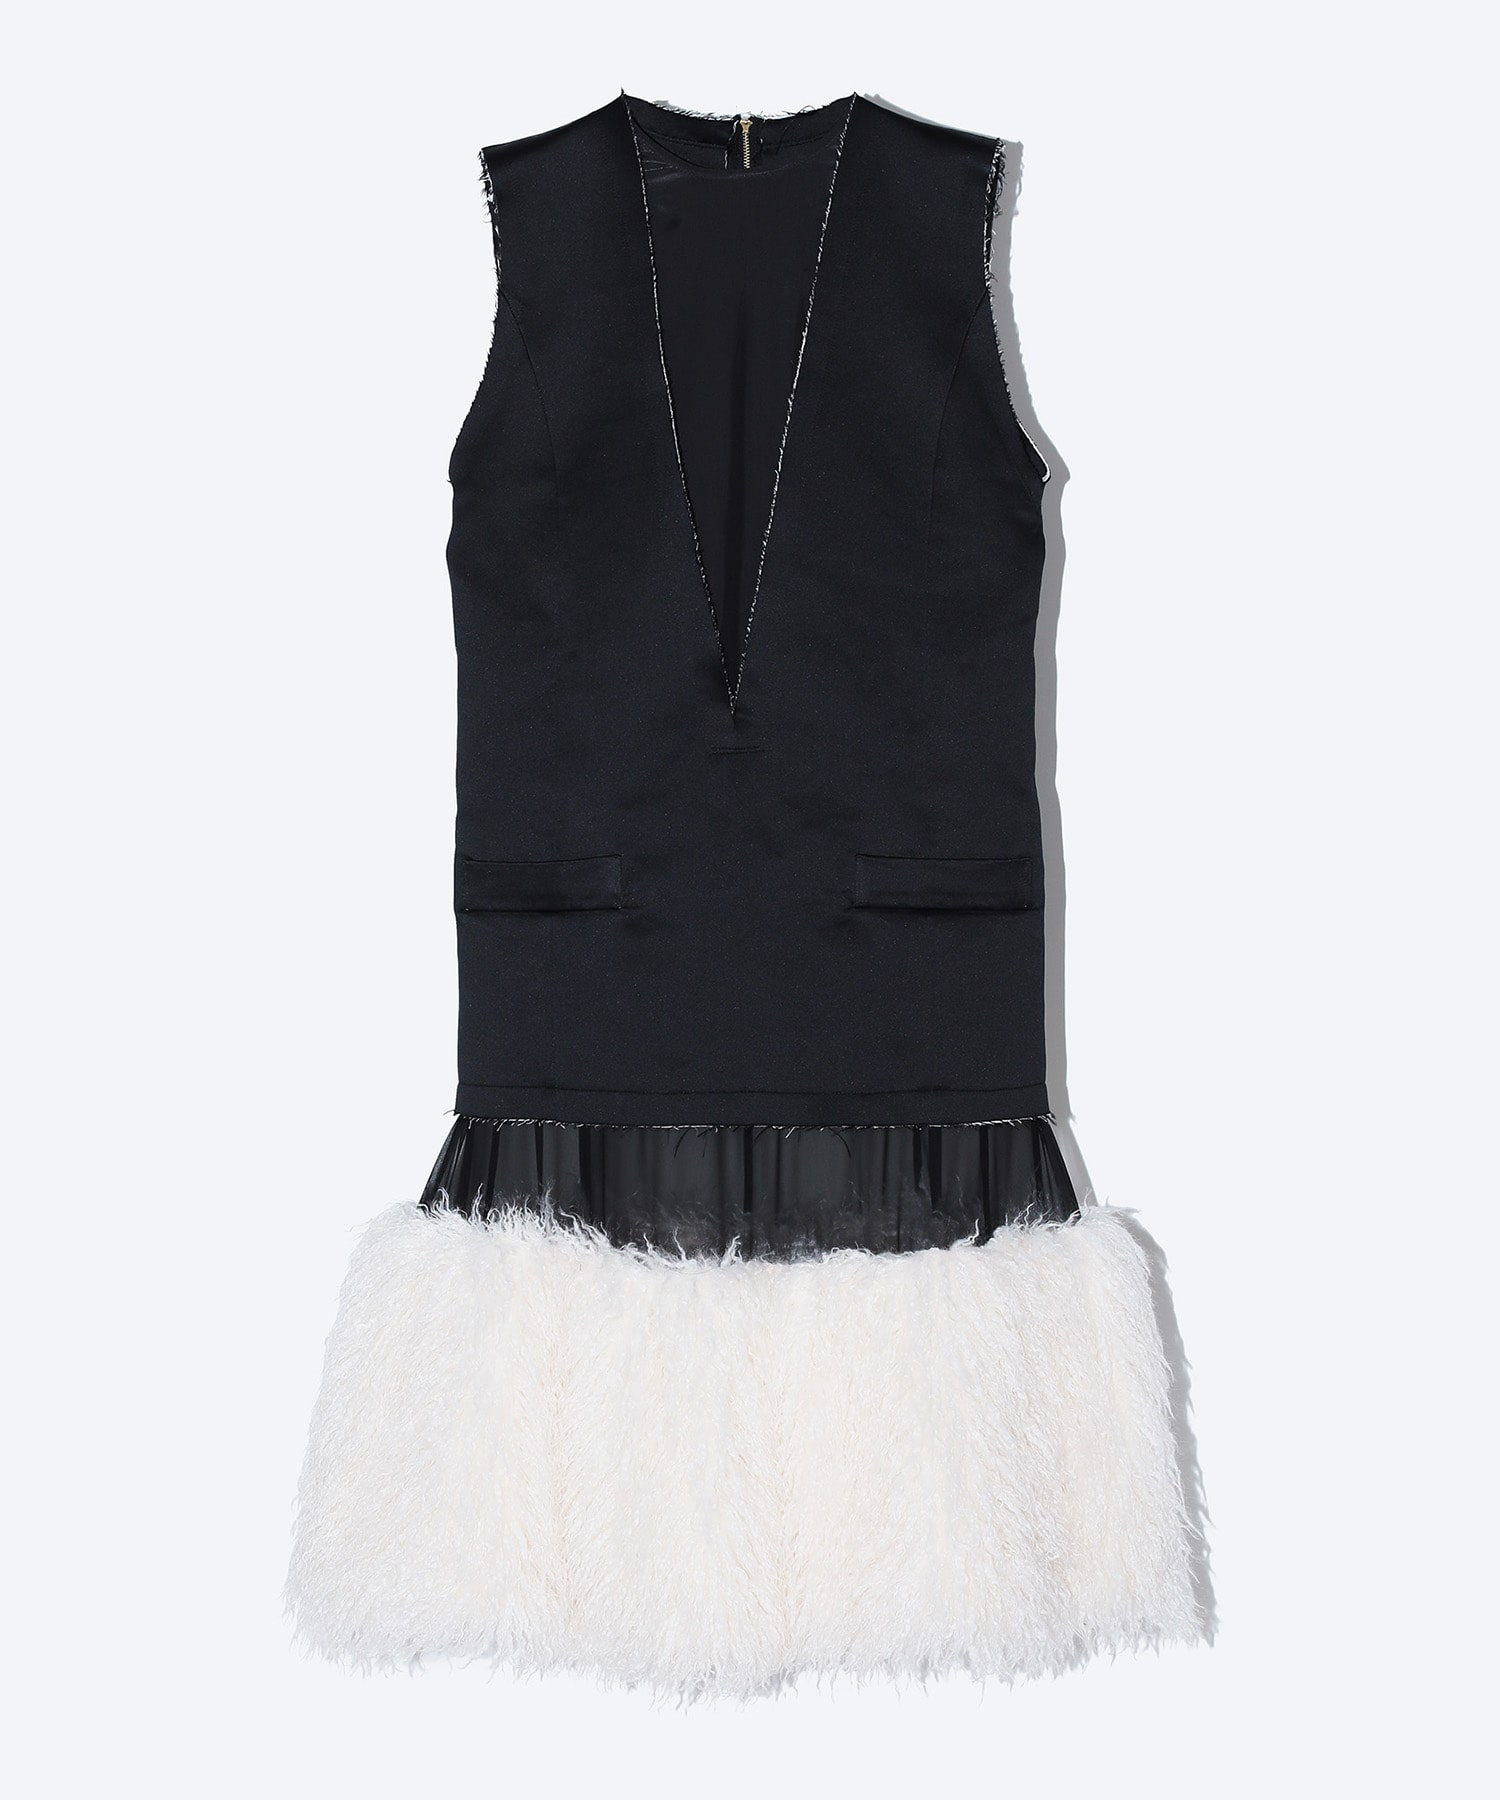 Cupra twill dress with fur